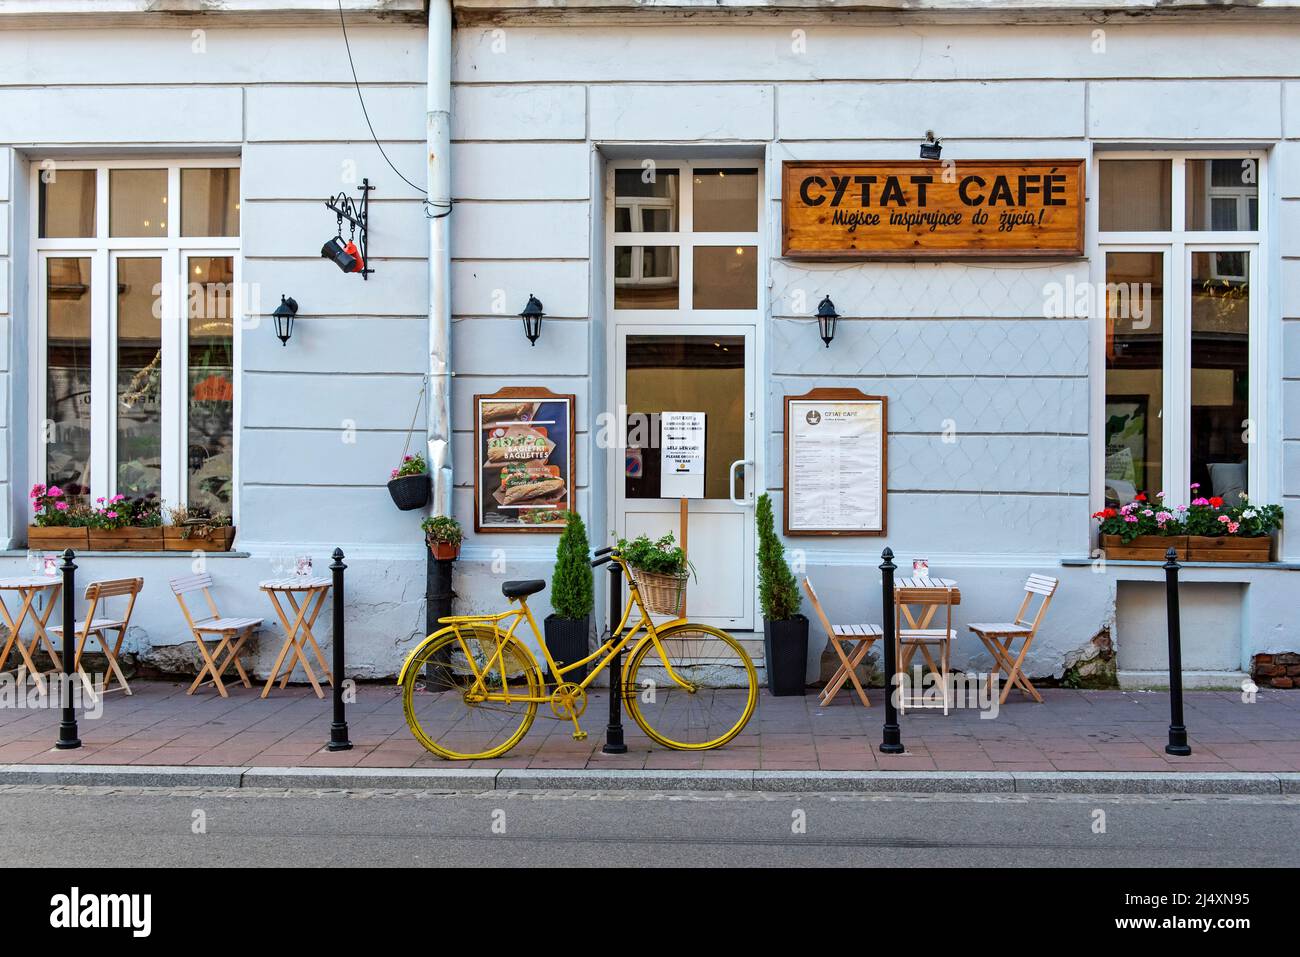 Cytat Café, Kazimierz, Krakow, Poland Stock Photo